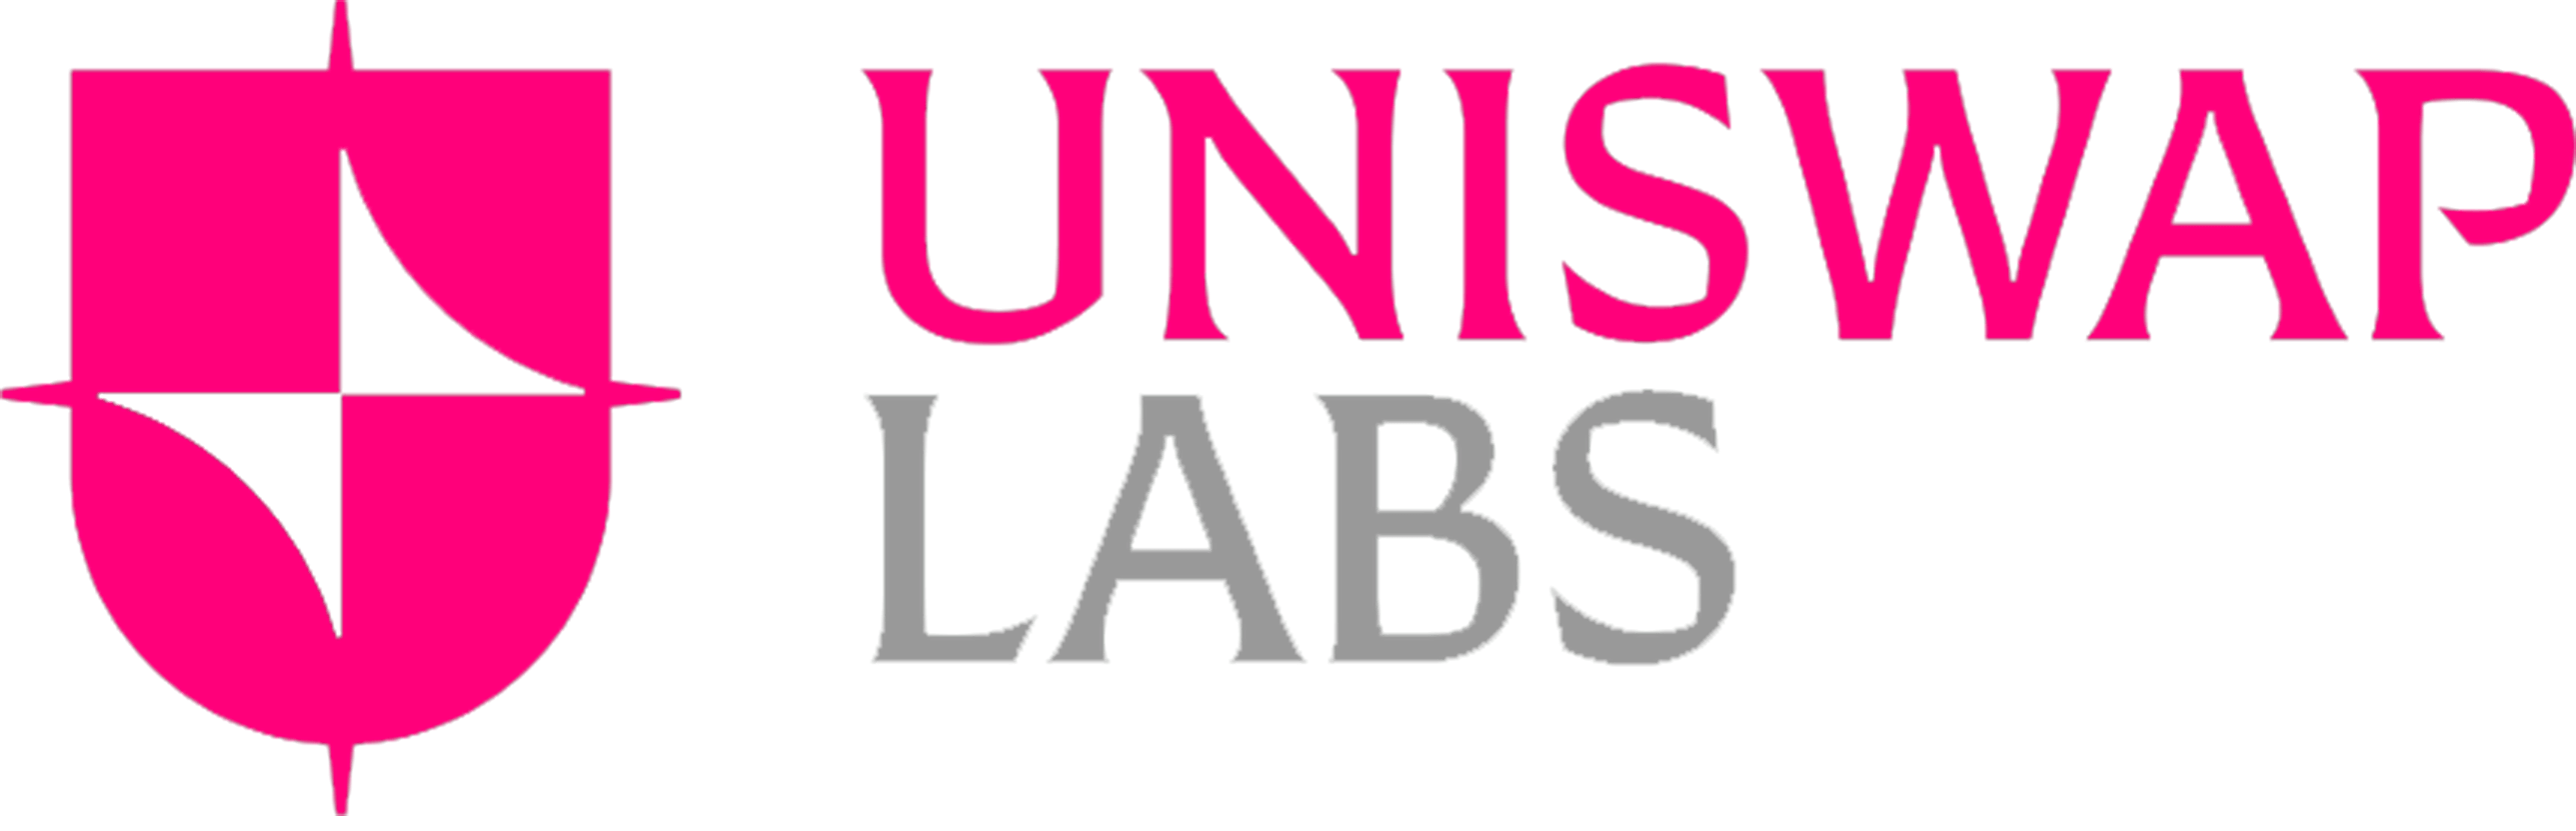 Uniswap Labs Ventures